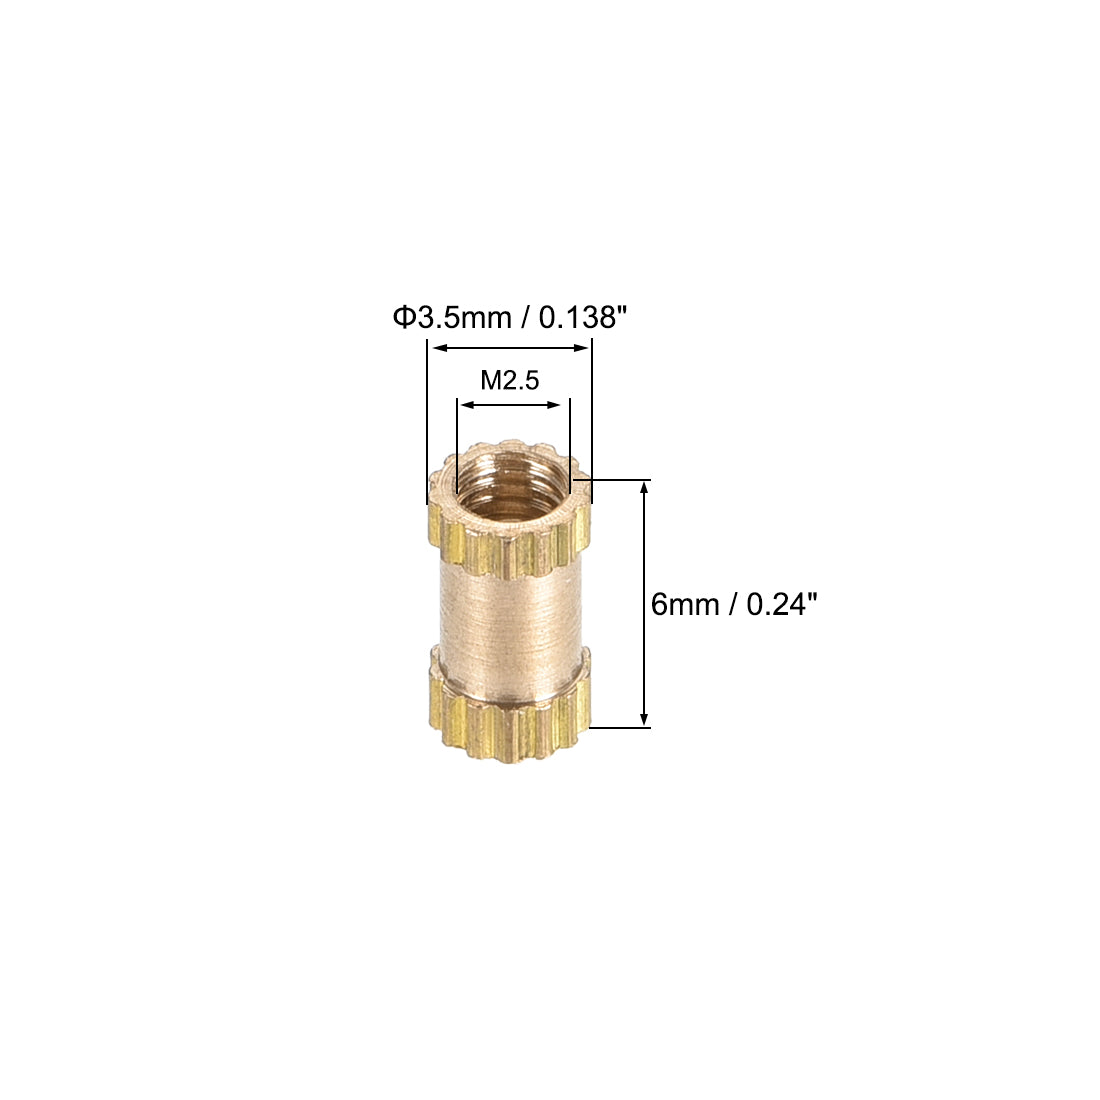 uxcell Uxcell Knurled Insert Nuts, M2.5 x 6mm(L) x 3.5mm(OD) Female Thread Brass Embedment Assortment Kit, 50 Pcs